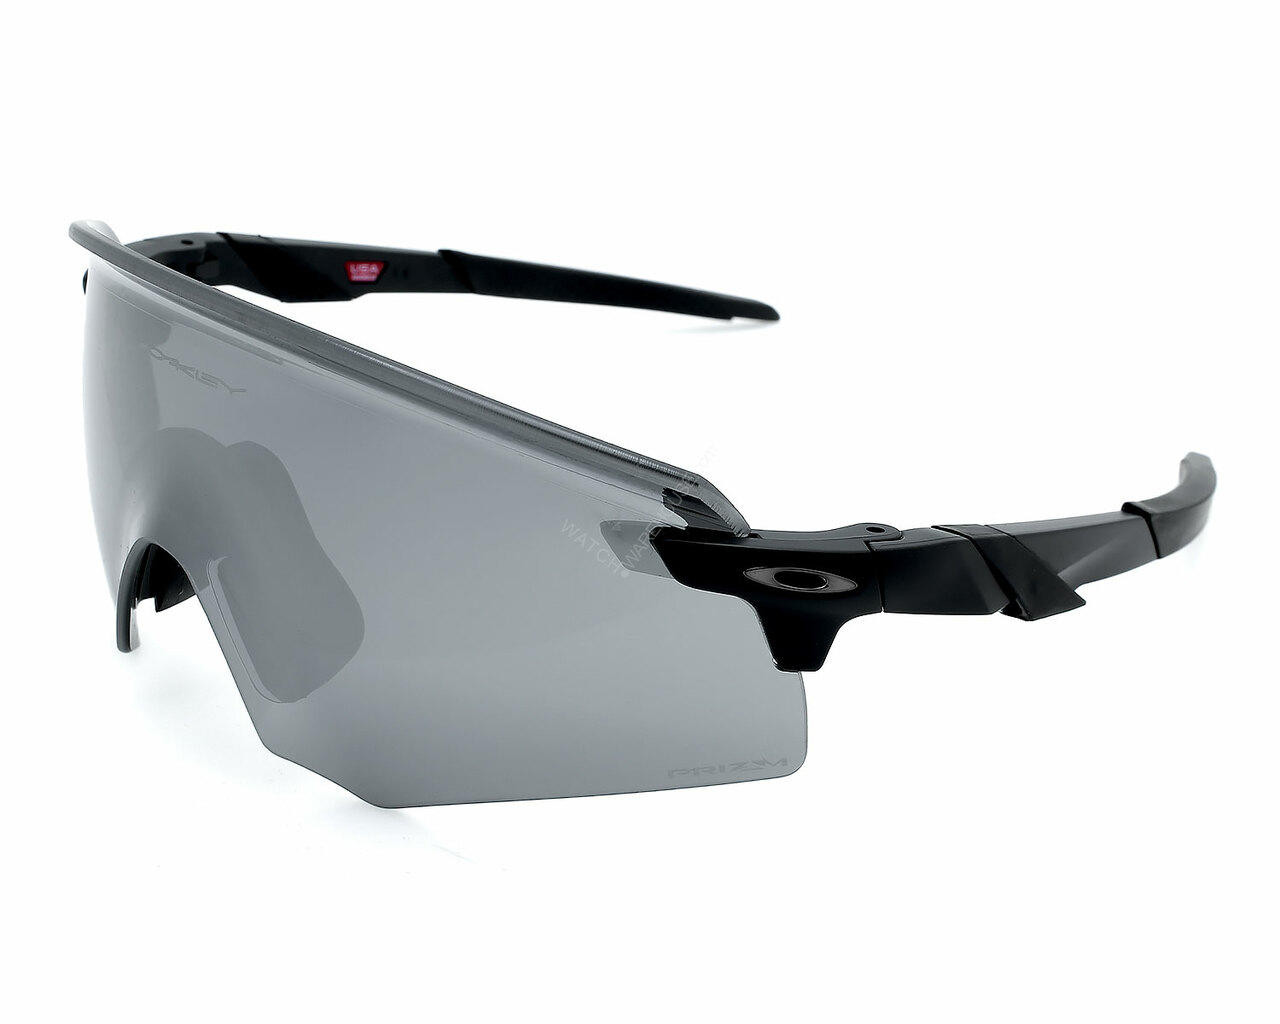 Encoder Prizm Road Lenses, Matte Black Frame Sunglasses